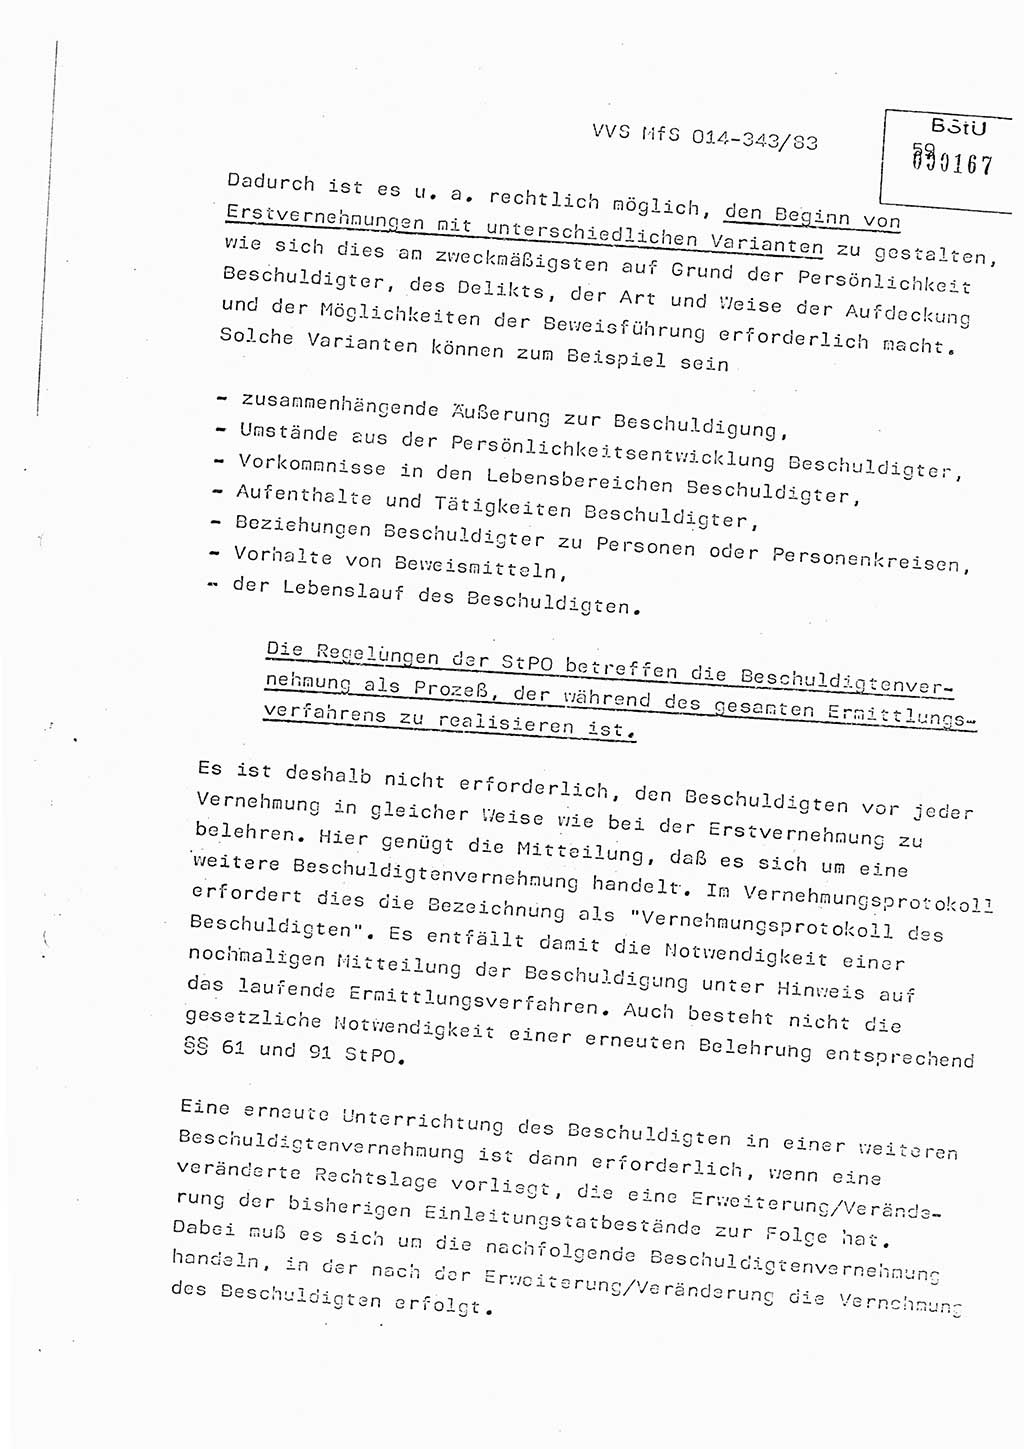 Lektion Ministerium für Staatssicherheit (MfS) [Deutsche Demokratische Republik (DDR)], Hauptabteilung (HA) Ⅸ, Vertrauliche Verschlußsache (VVS) o014-343/83, Berlin 1983, Seite 59 (Lekt. MfS DDR HA Ⅸ VVS o014-343/83 1983, S. 59)